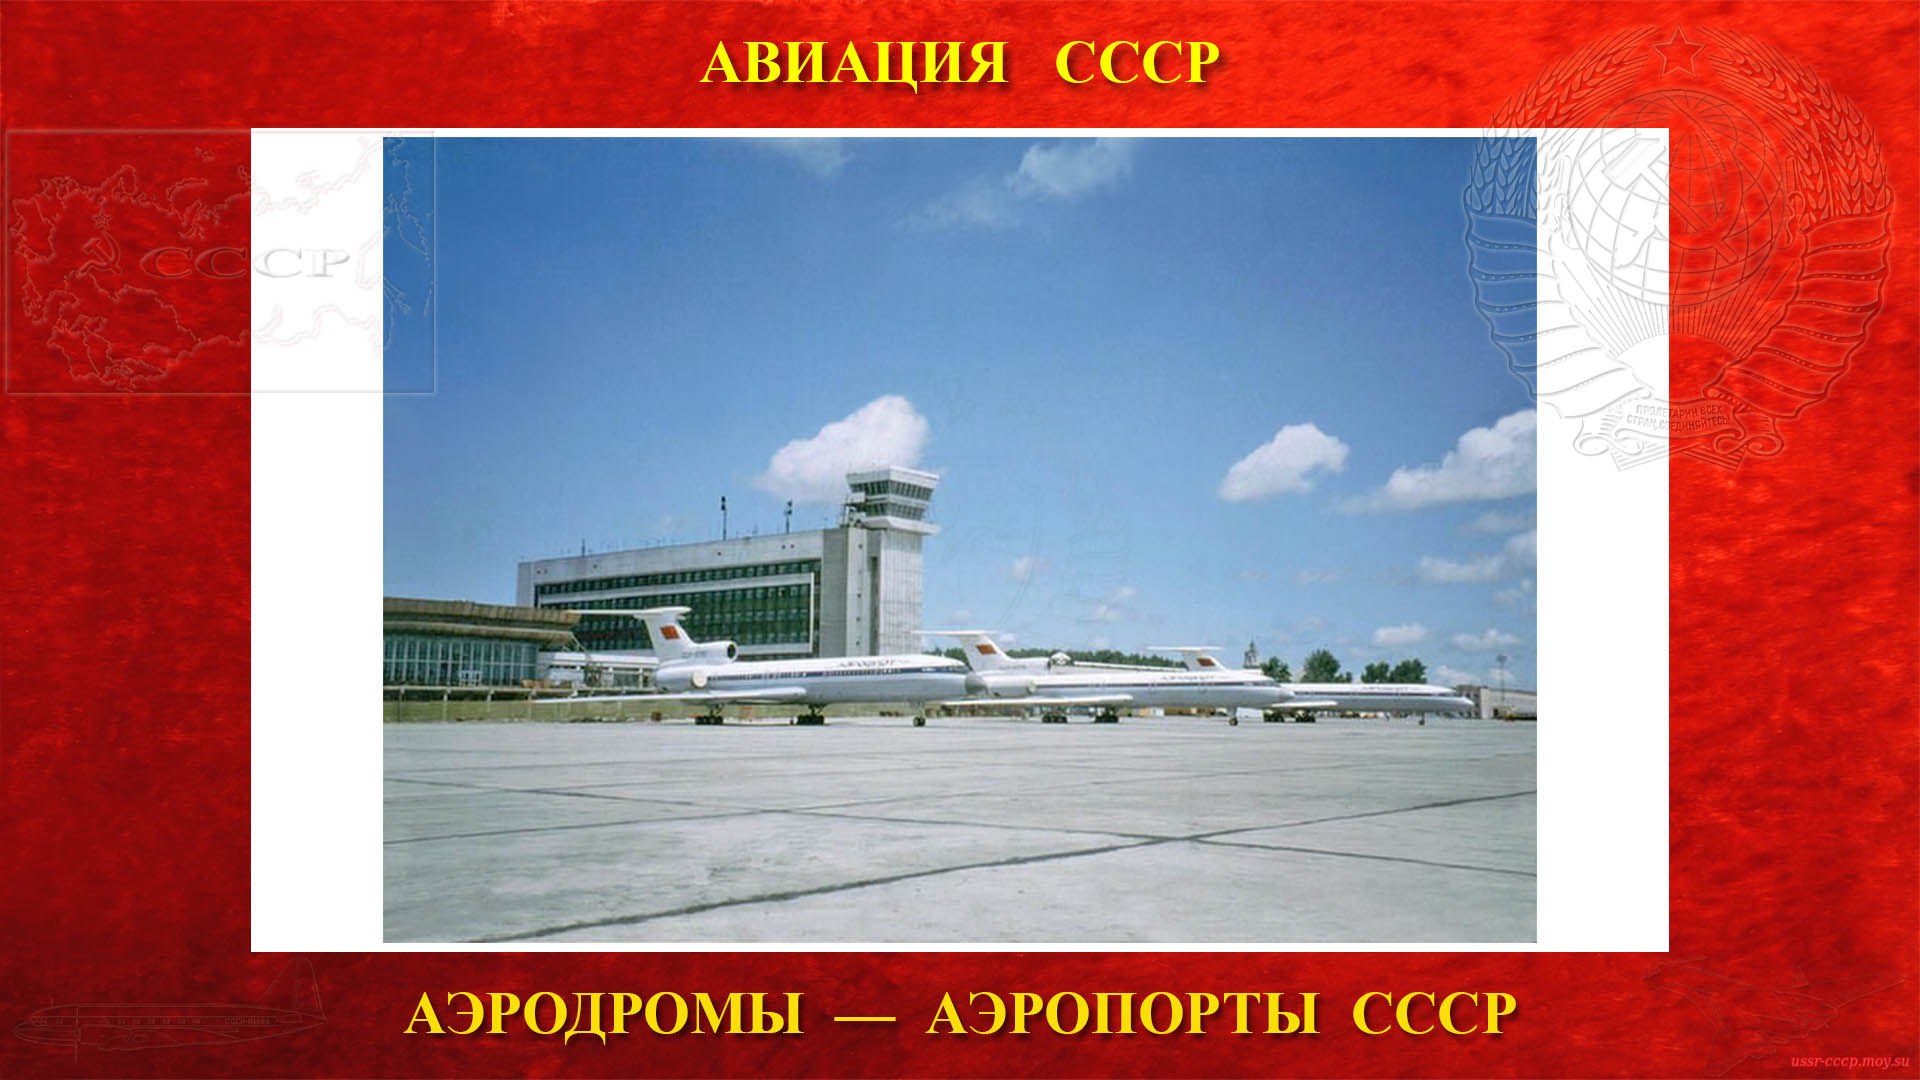 Хабаровск — Аэропорт СССР города Хабаровска (21.03.1954)